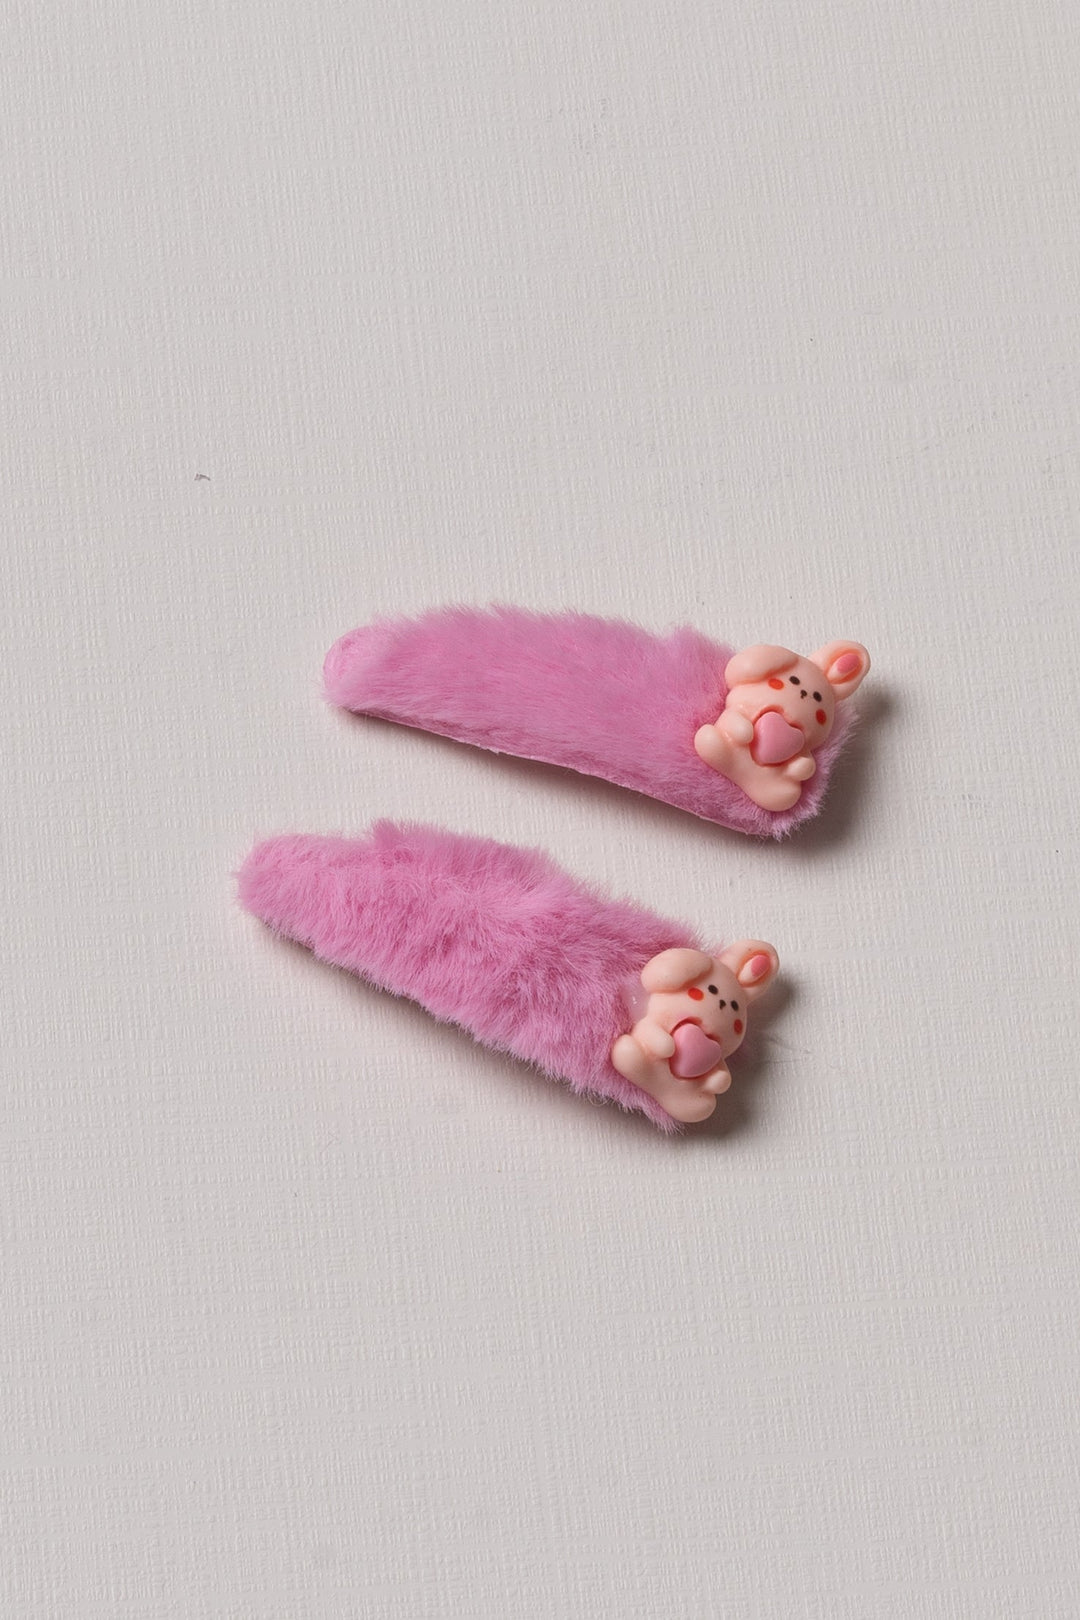 The Nesavu Tick Tac Clip Vibrant Pink Character Fuzzy Tick Tac Clips Nesavu Pink / Style 1 JHTT15B Kids' Pink Fuzzy Character Hair Clips | Cute Tick Tac Clips Collection | The Nesavu